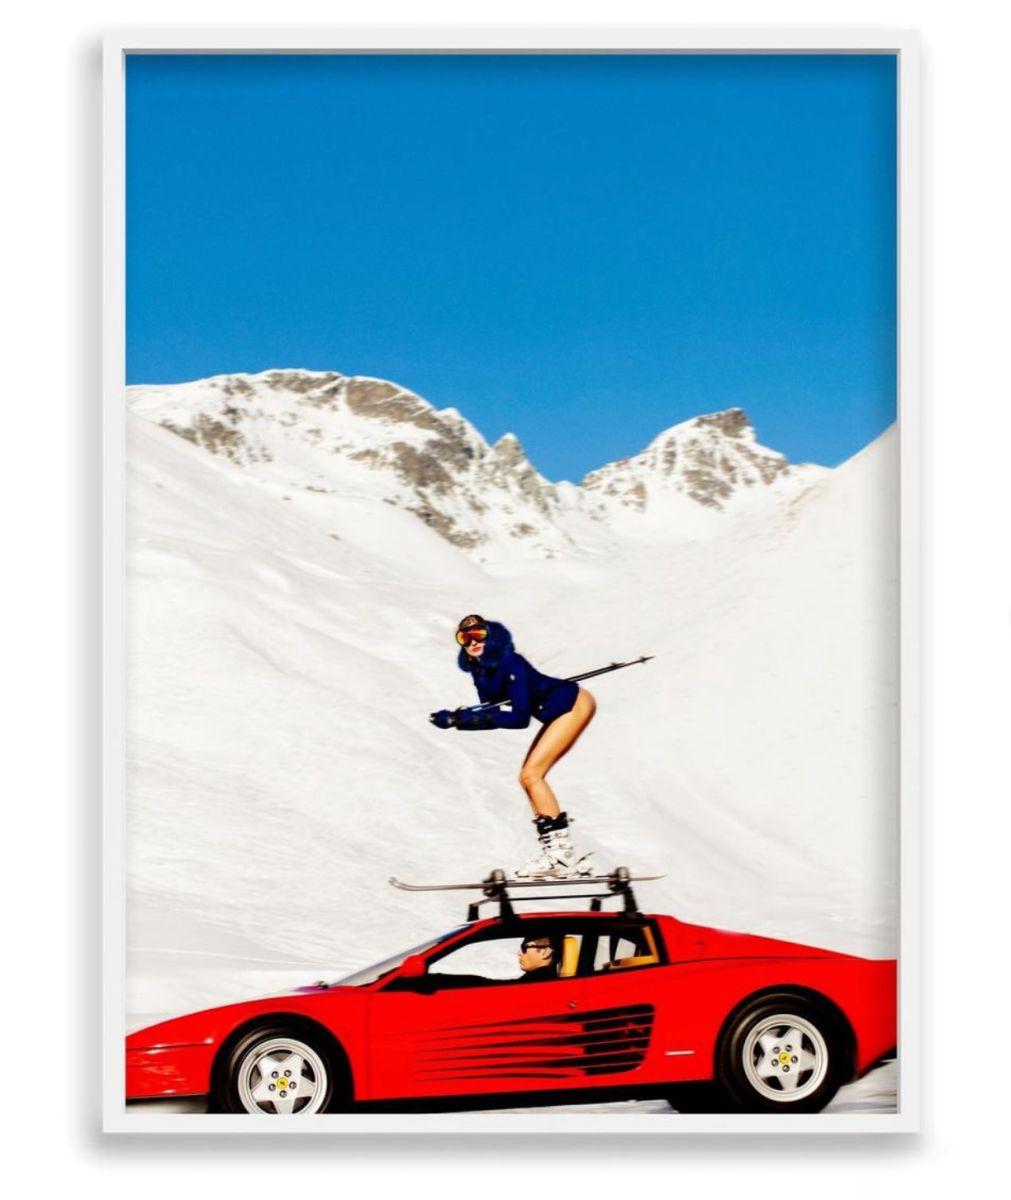 Off-Piste-Modell auf Skiern auf einem Auto in den Schneegräsern (Zeitgenössisch), Photograph, von Tony Kelly